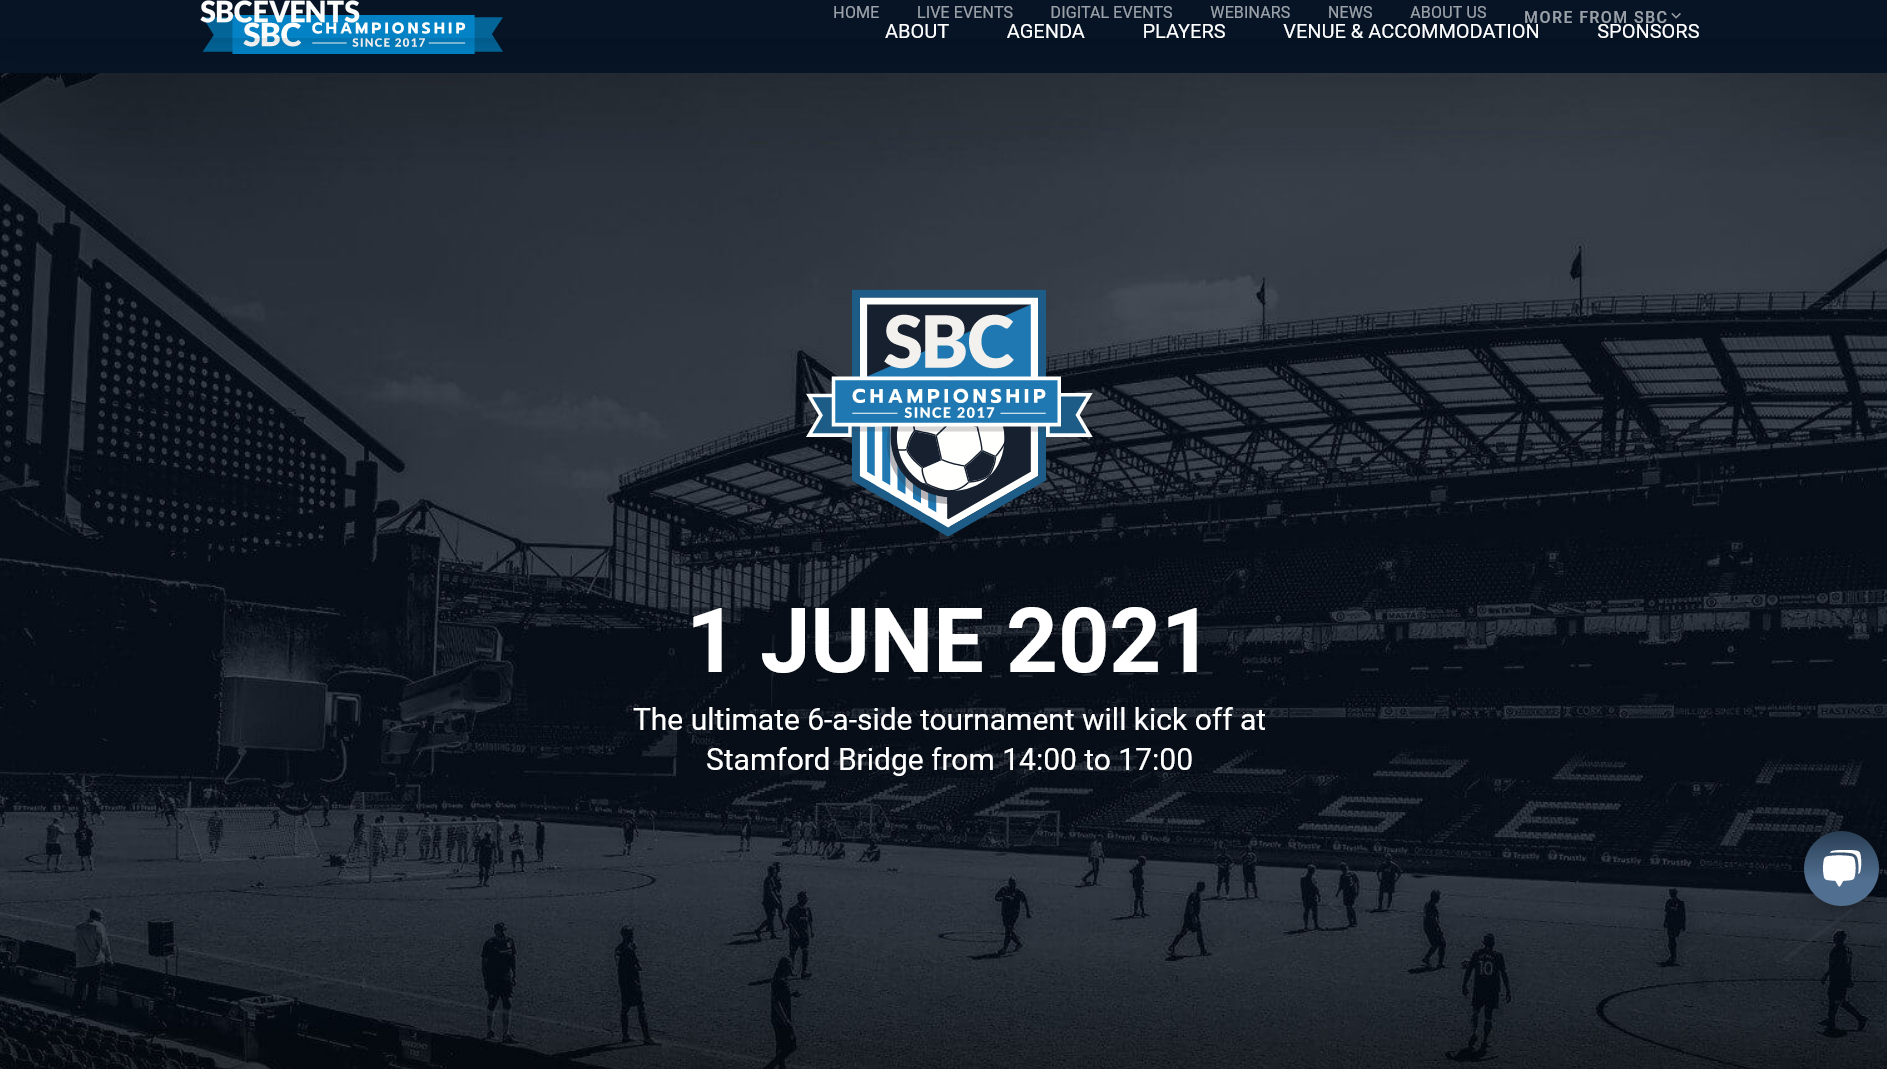 SBC Championship keert volgende maand terug naar Stamford Bridge Topgoal®